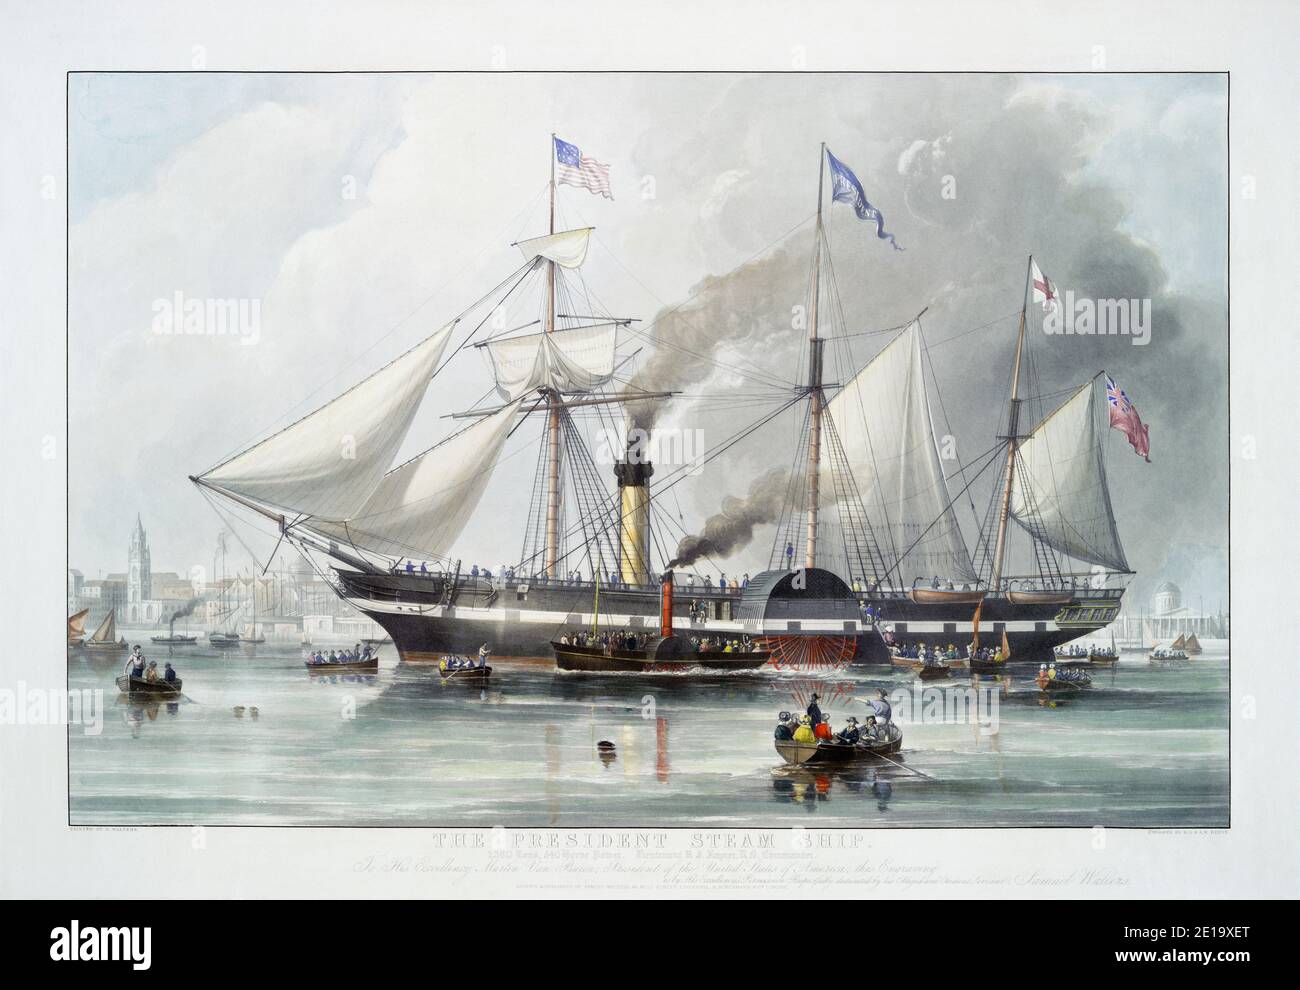 Il Presidente Steam Ship. Dopo un'incisione di R.G e A.W. Reeve pubblicato nel 1840 da un dipinto di Samuel Walters. Il presidente britannico delle SS di linea passeggeri era la nave più grande del mondo. Fu persa in mare con tutti a bordo nel 1841 Foto Stock